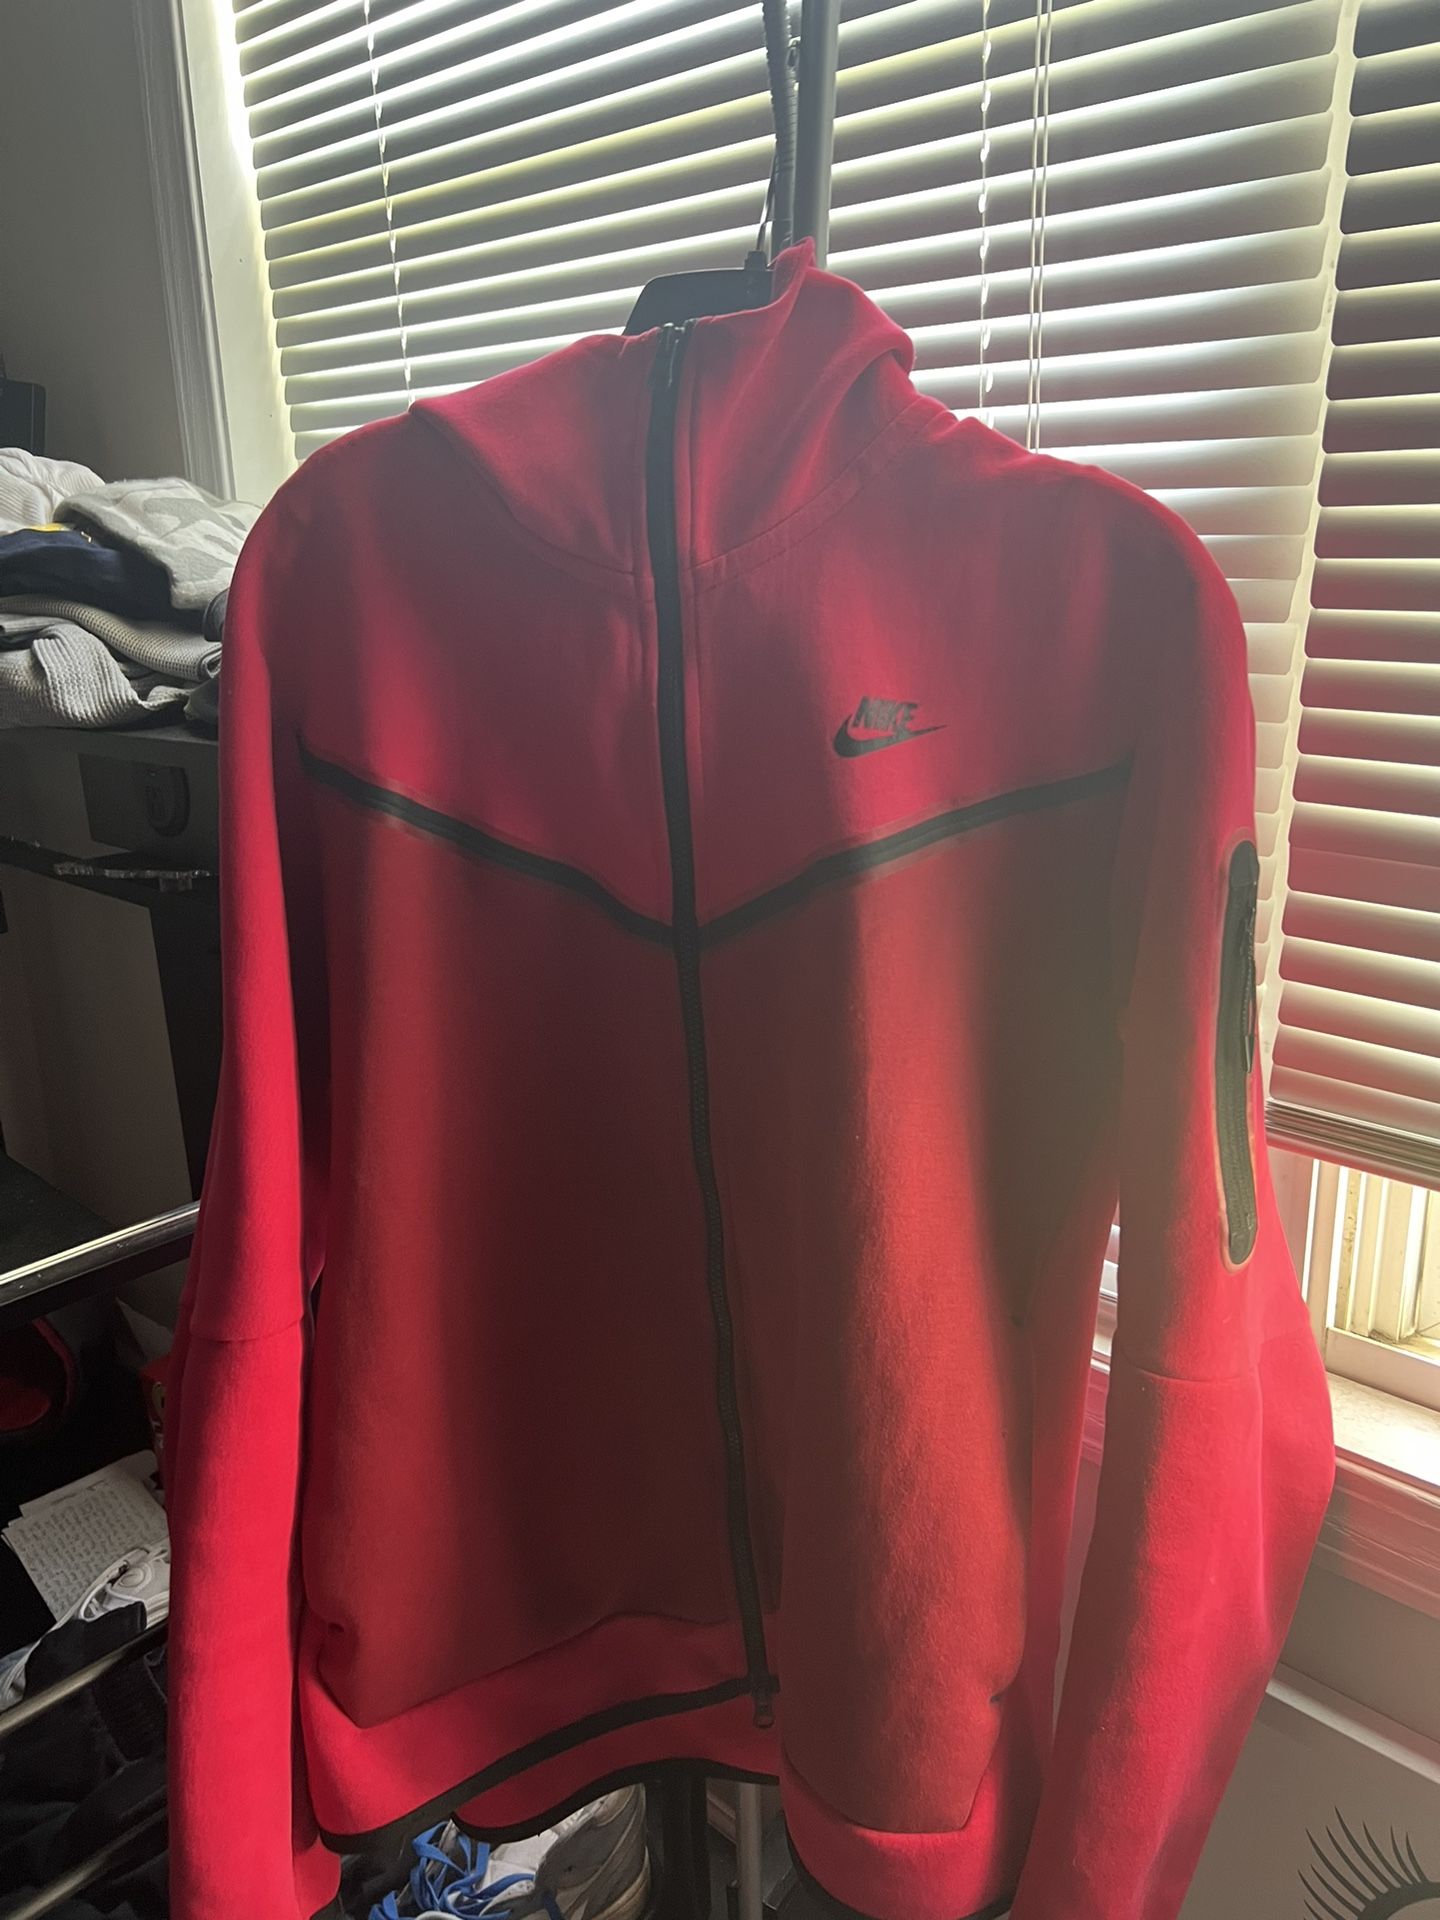 Nike Tech Jacket Size Large 